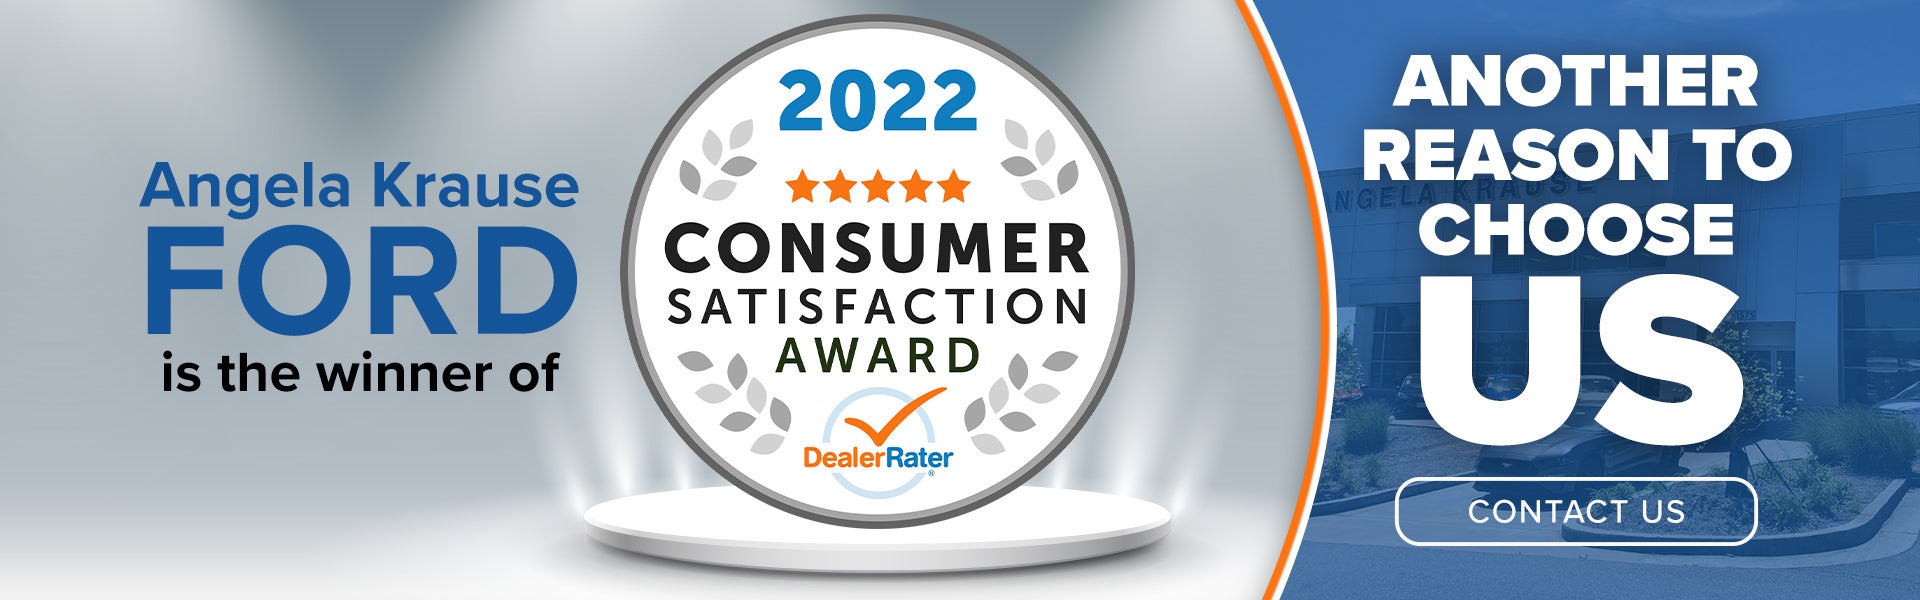 Customer Satisfaction Award at Angela Krause Ford 